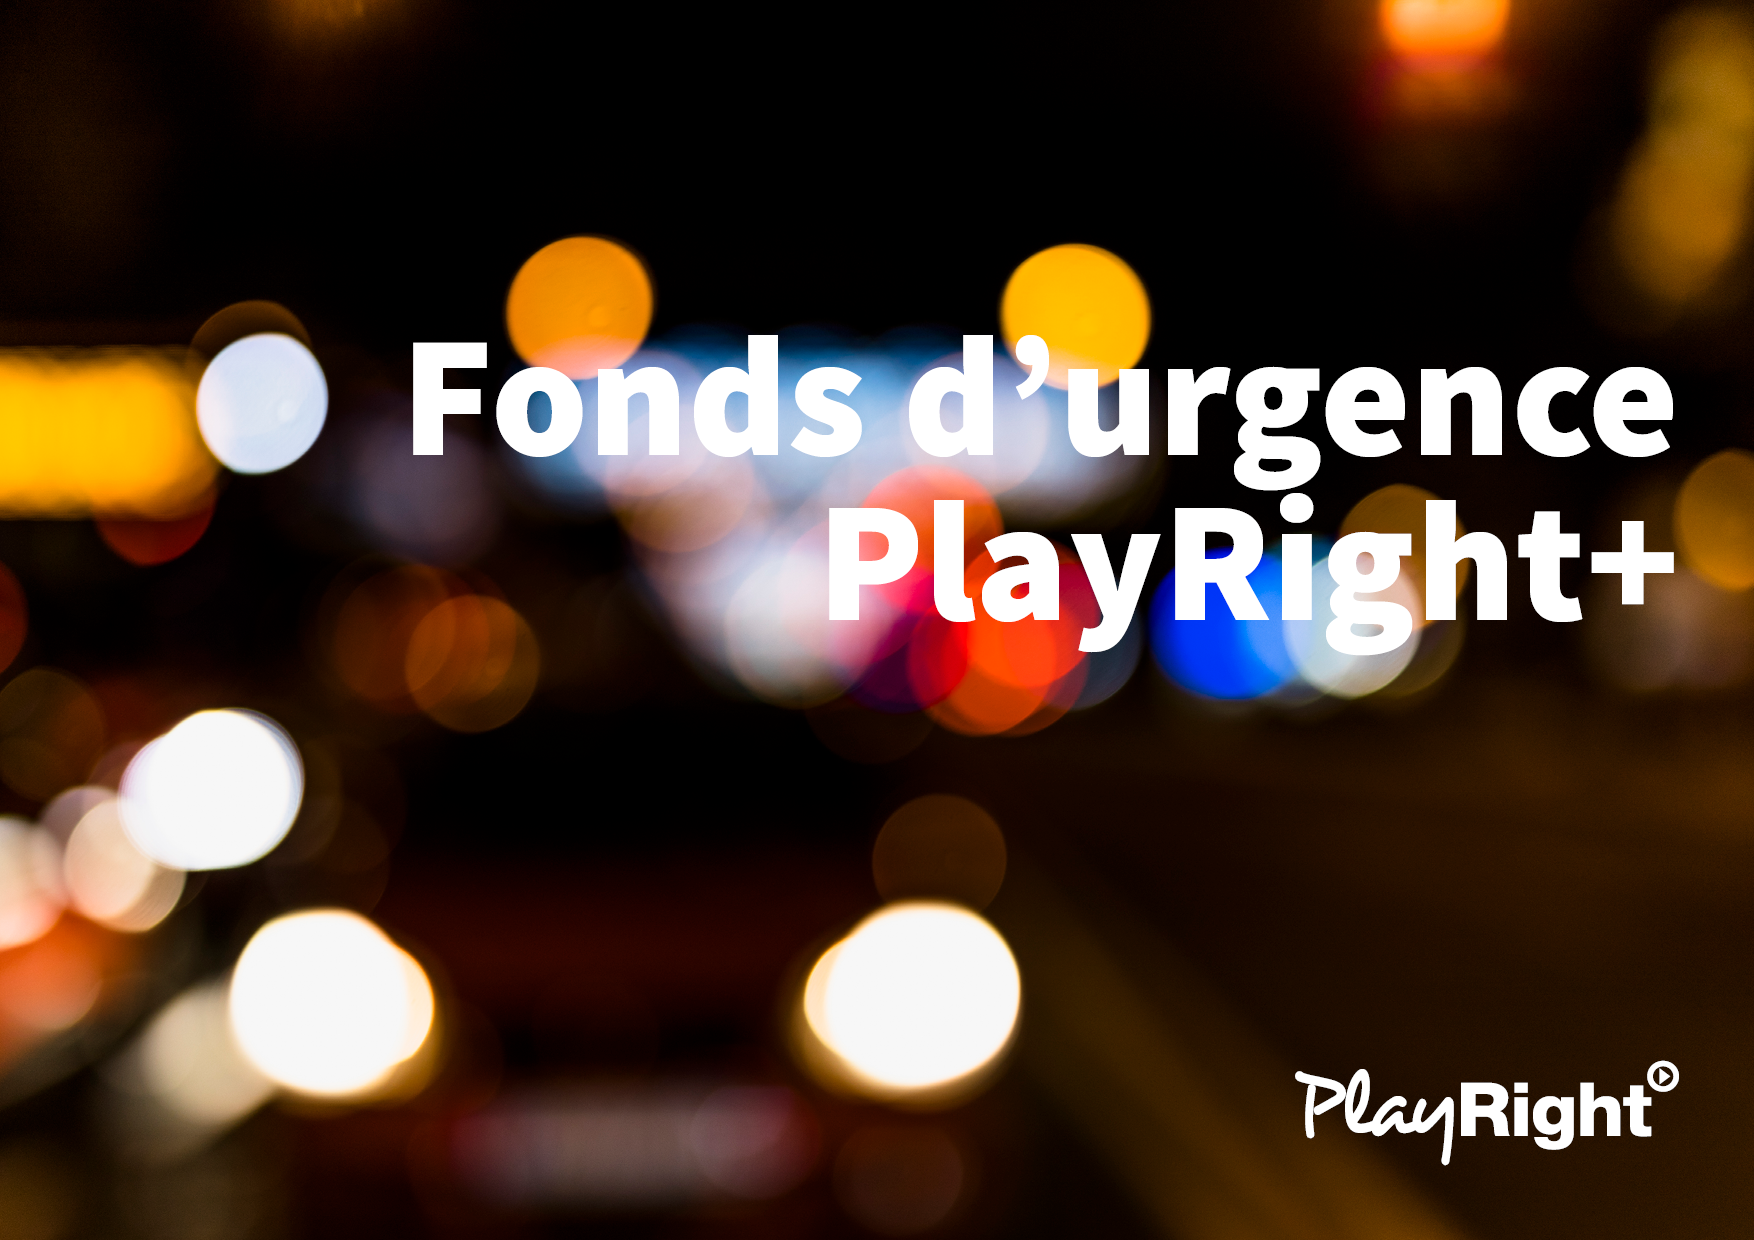 Le fonds d’urgence de PlayRight+ est prolongé pour les mois de novembre et décembre!